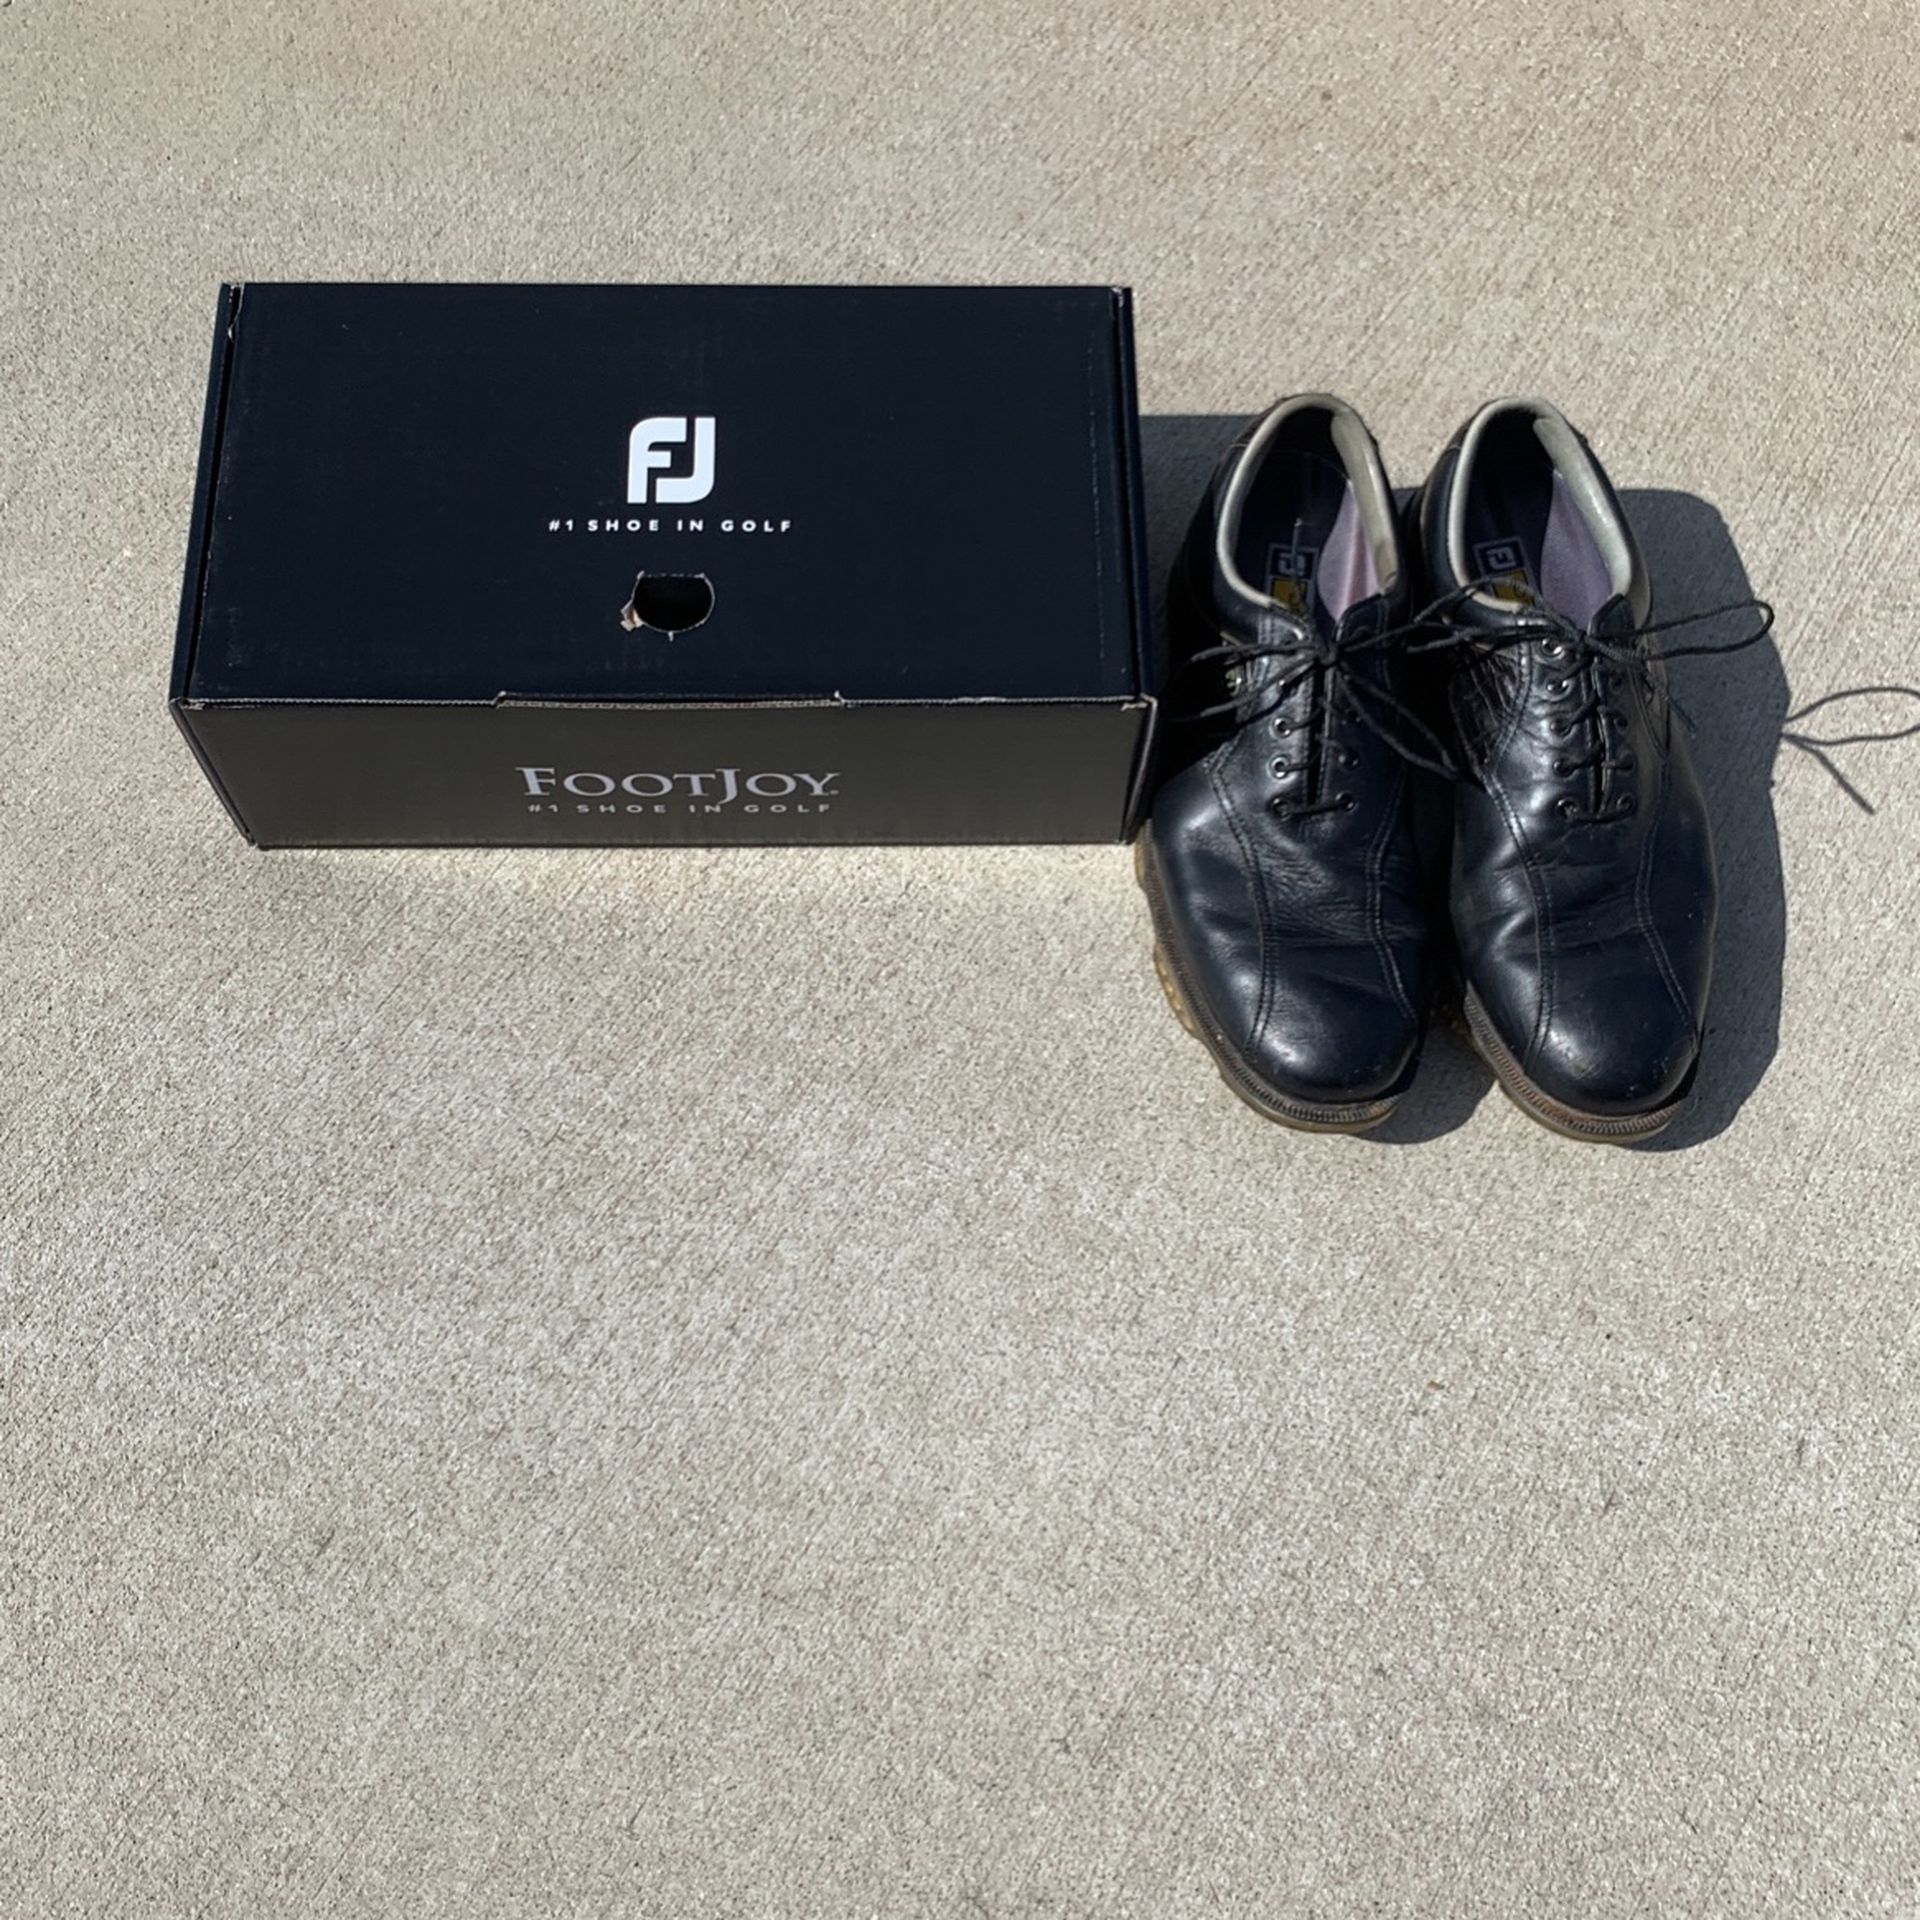 Footjoy Men’s Golf Shoes - 10.5 Men’s